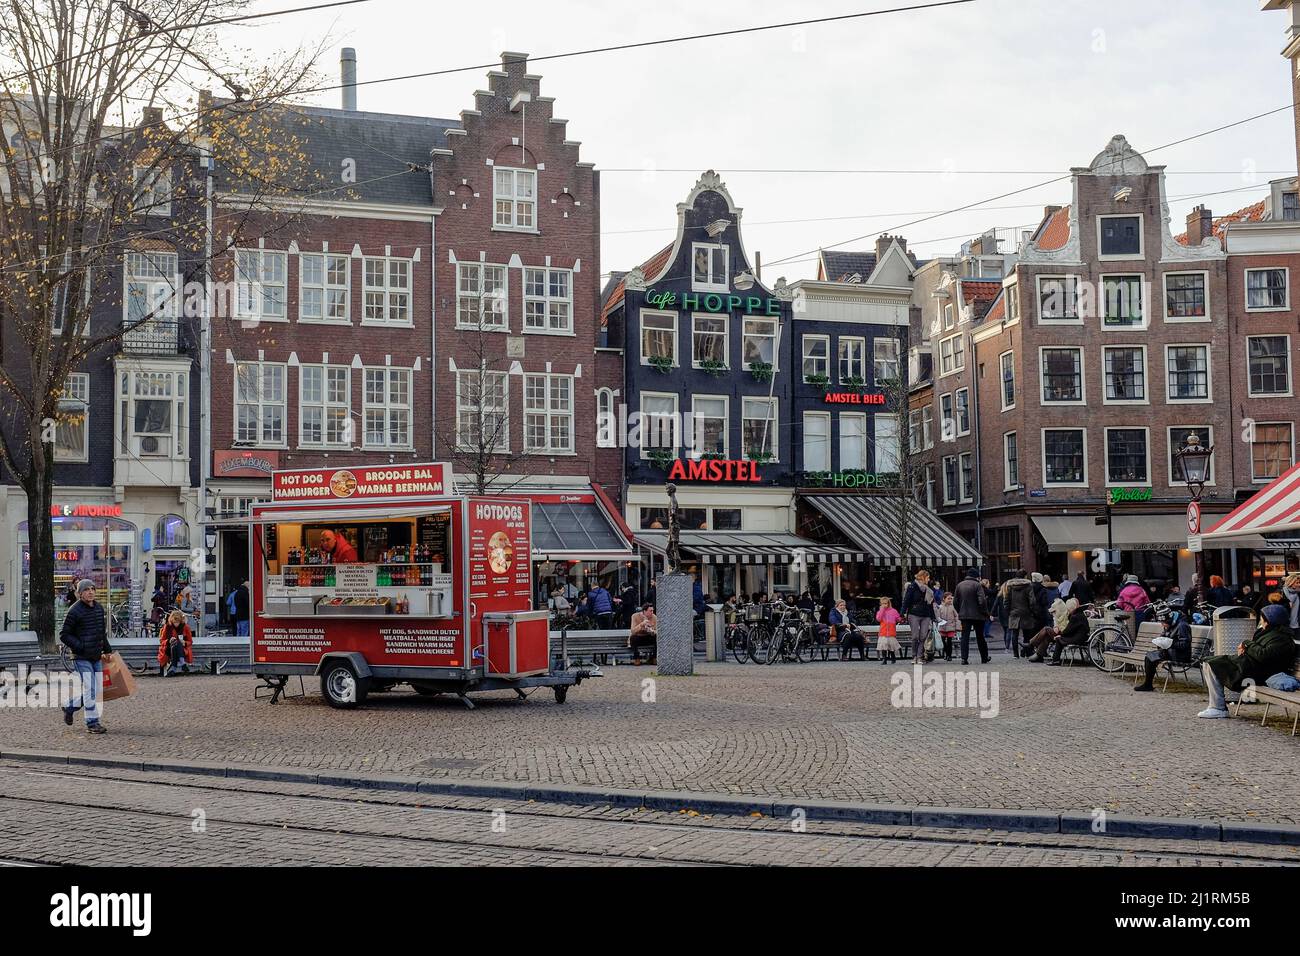 Famoso punto de referencia urbano tradicional de Ámsterdam con tiendas y camiones de comida, la capital de Holanda Europa Foto de stock